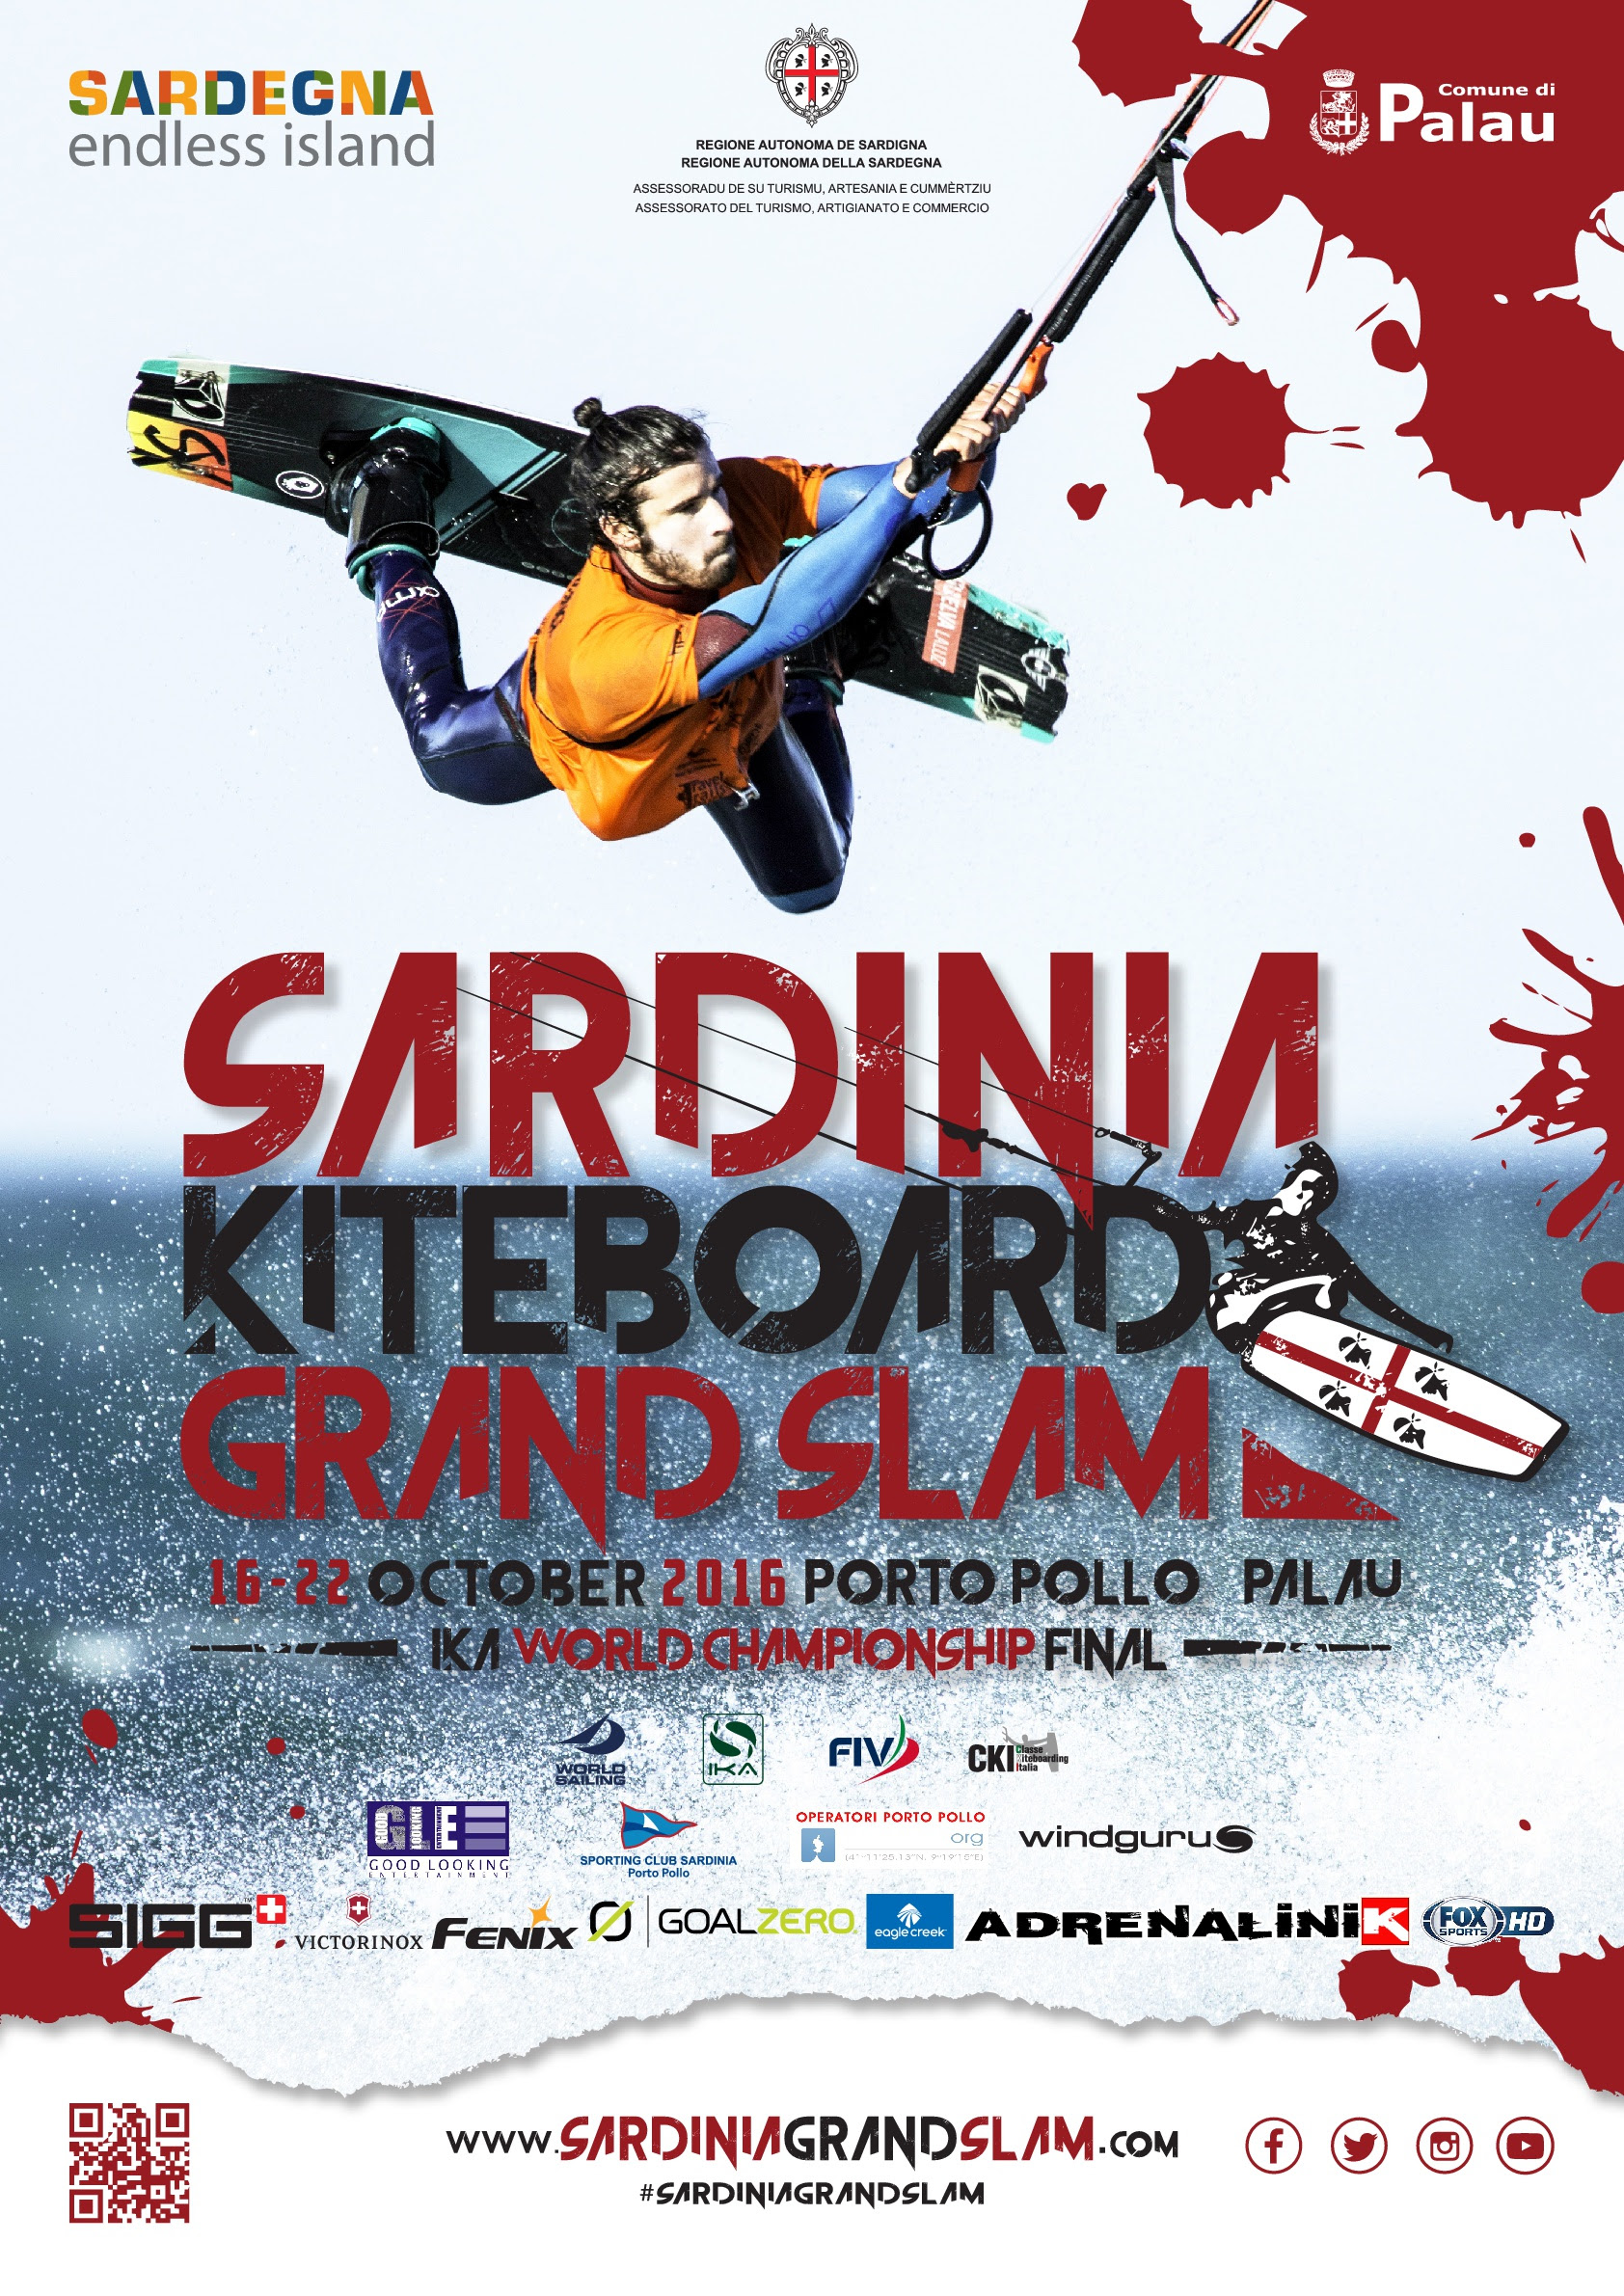 Solo una settimana al Sardinia Grand Slam